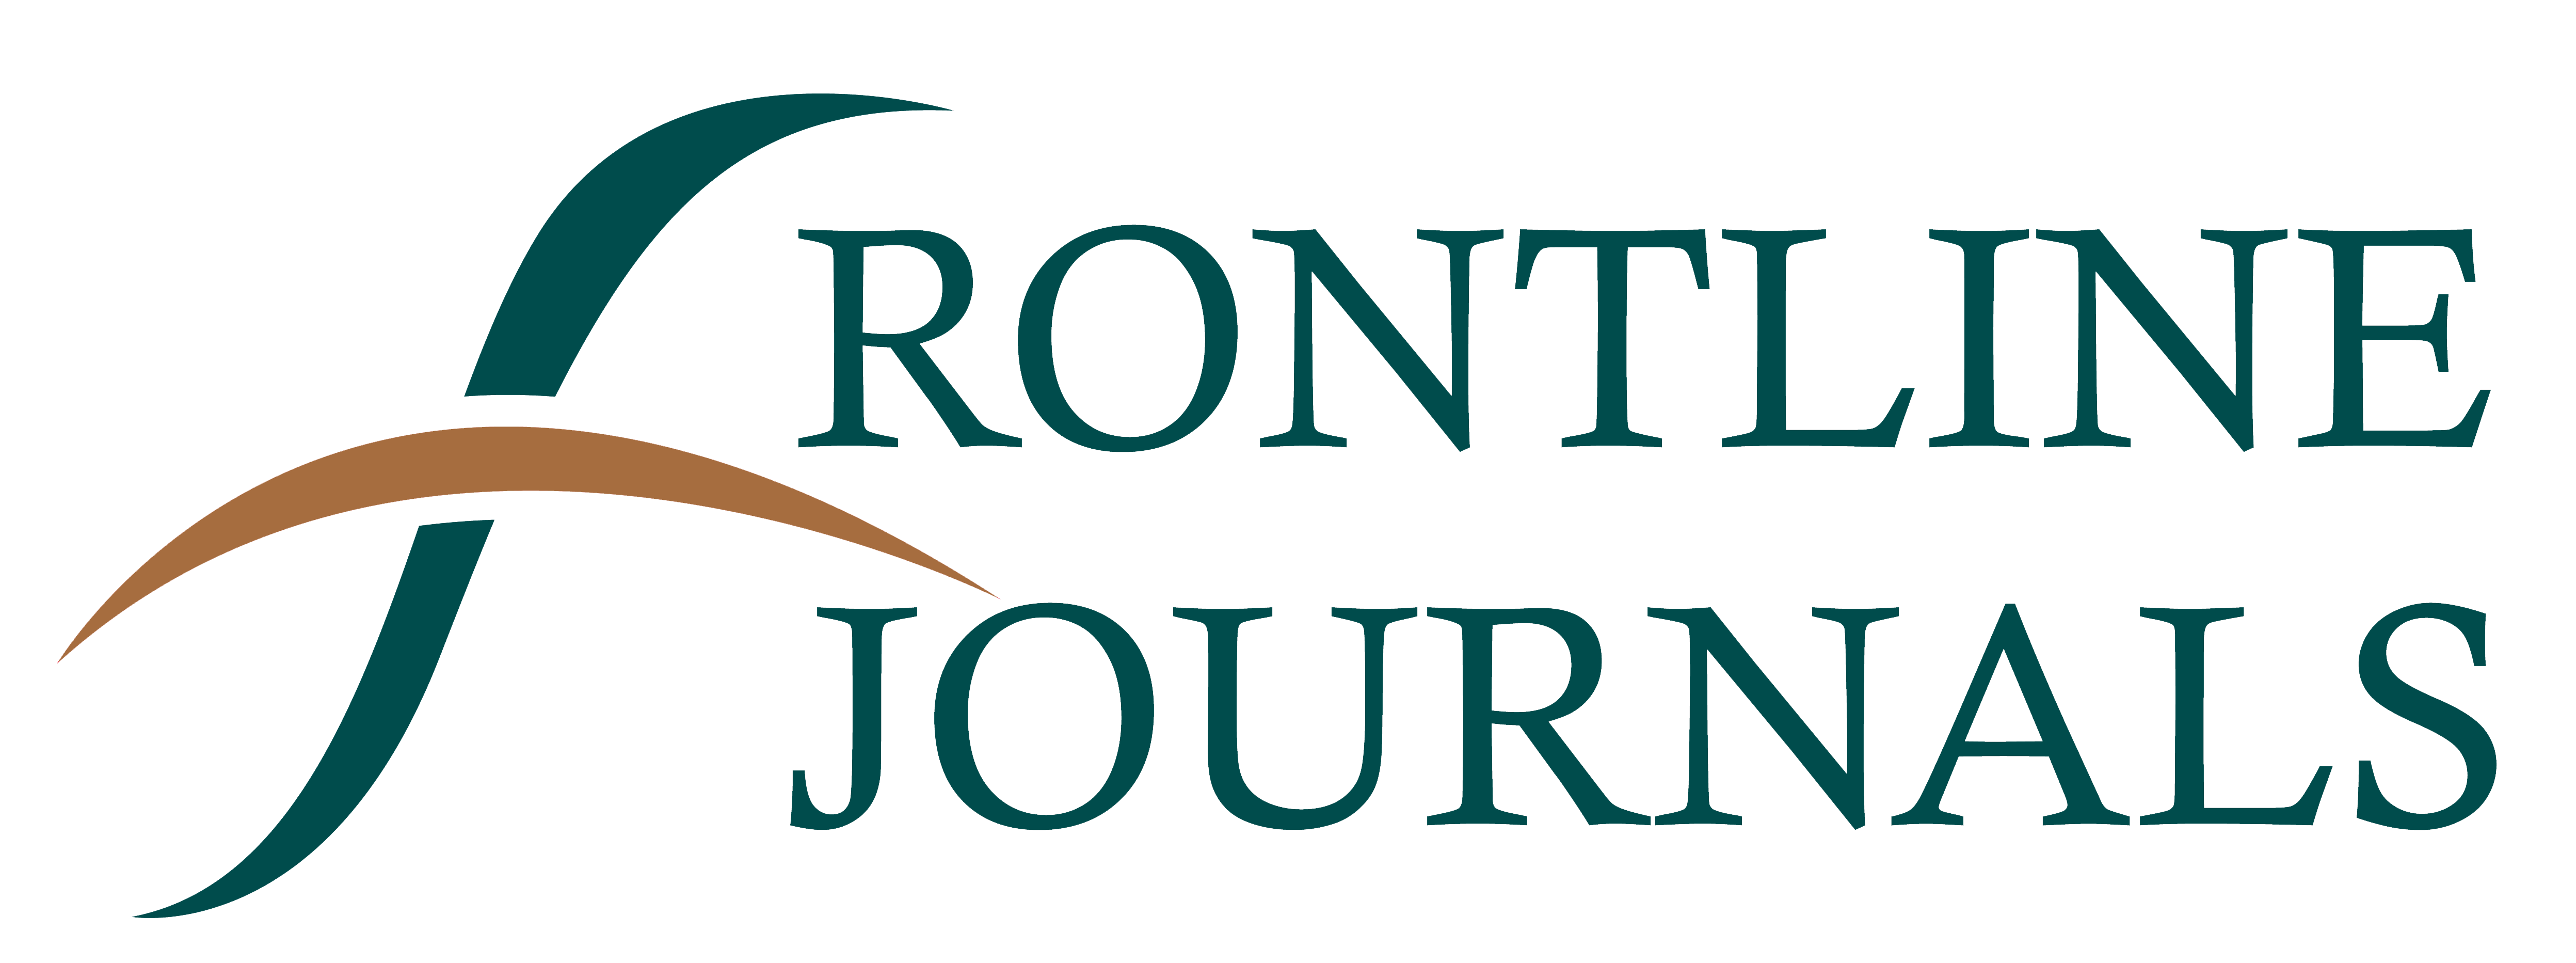 frontline_journals_peer_reviewed_journals